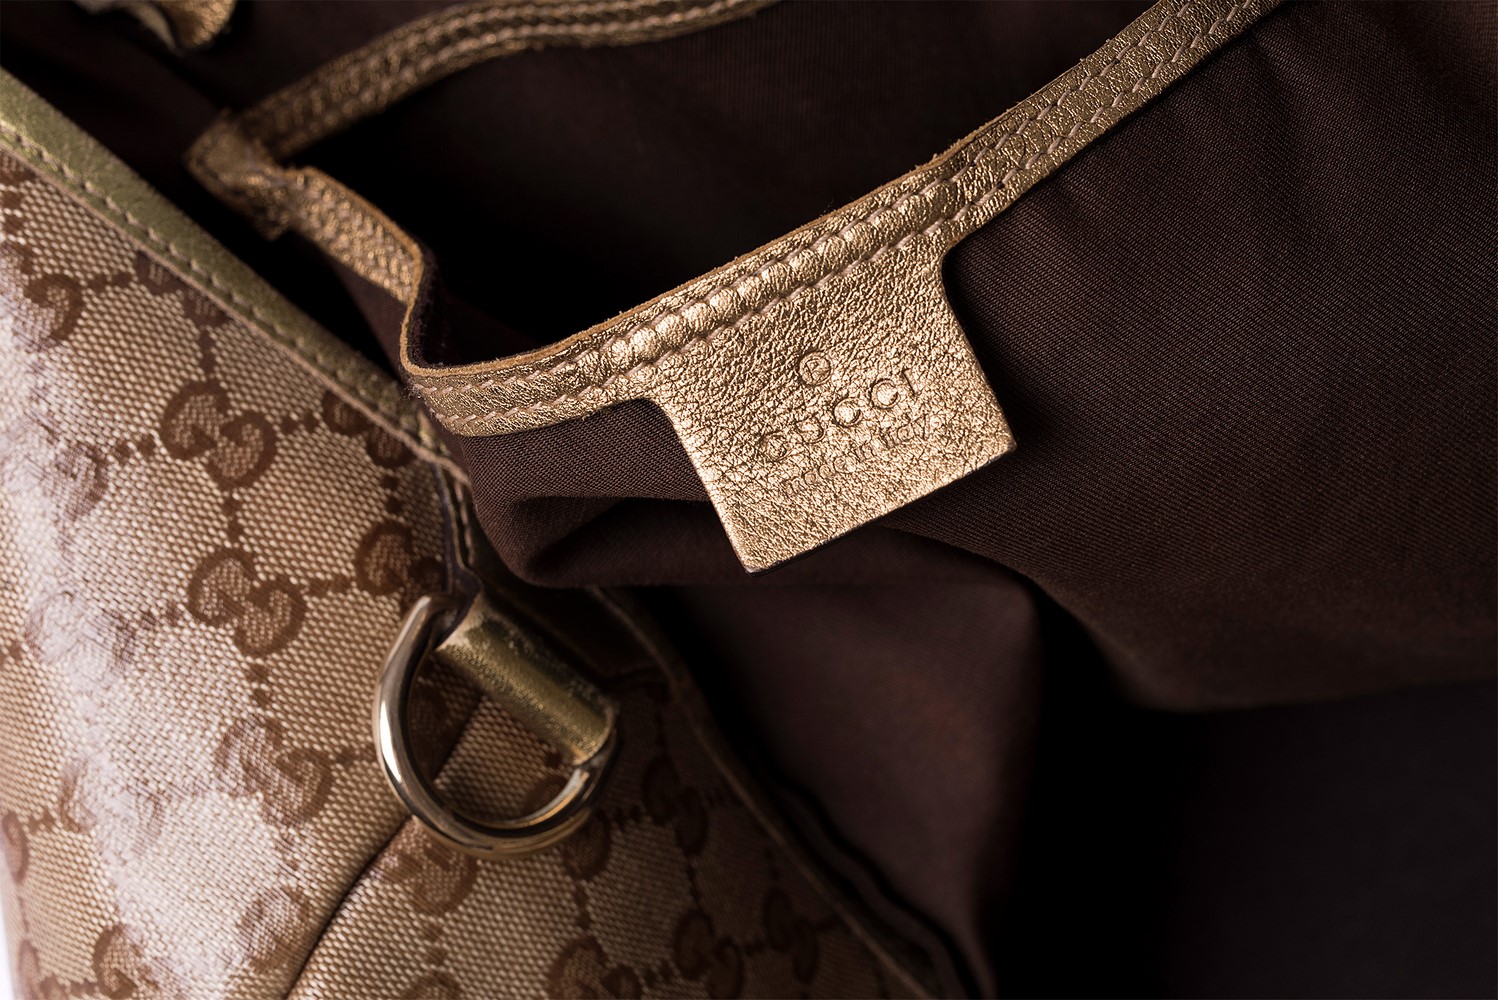 Sac cabas Gucci monogram dorée Authentique d'occasion avec porte-clés Gucci Dog motifs Guccissima